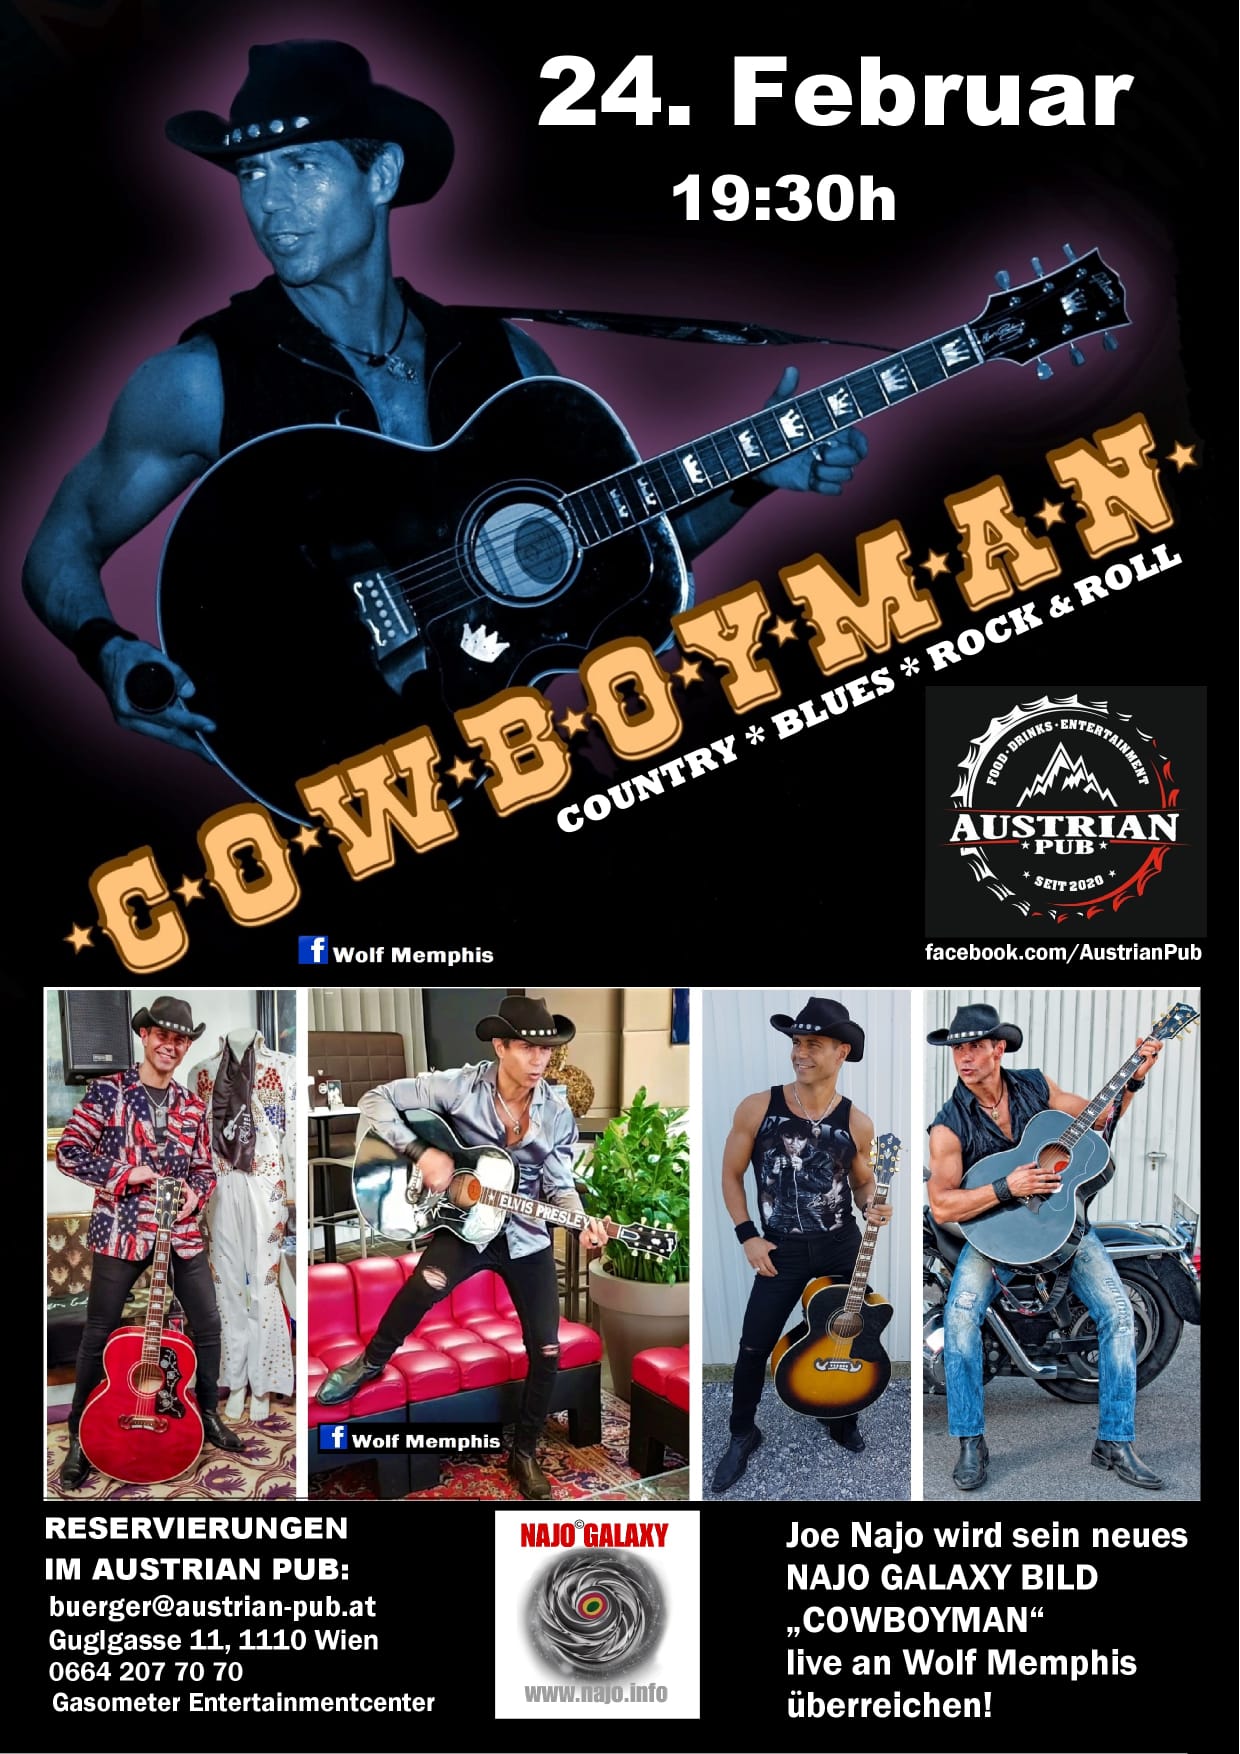 Cowboyman